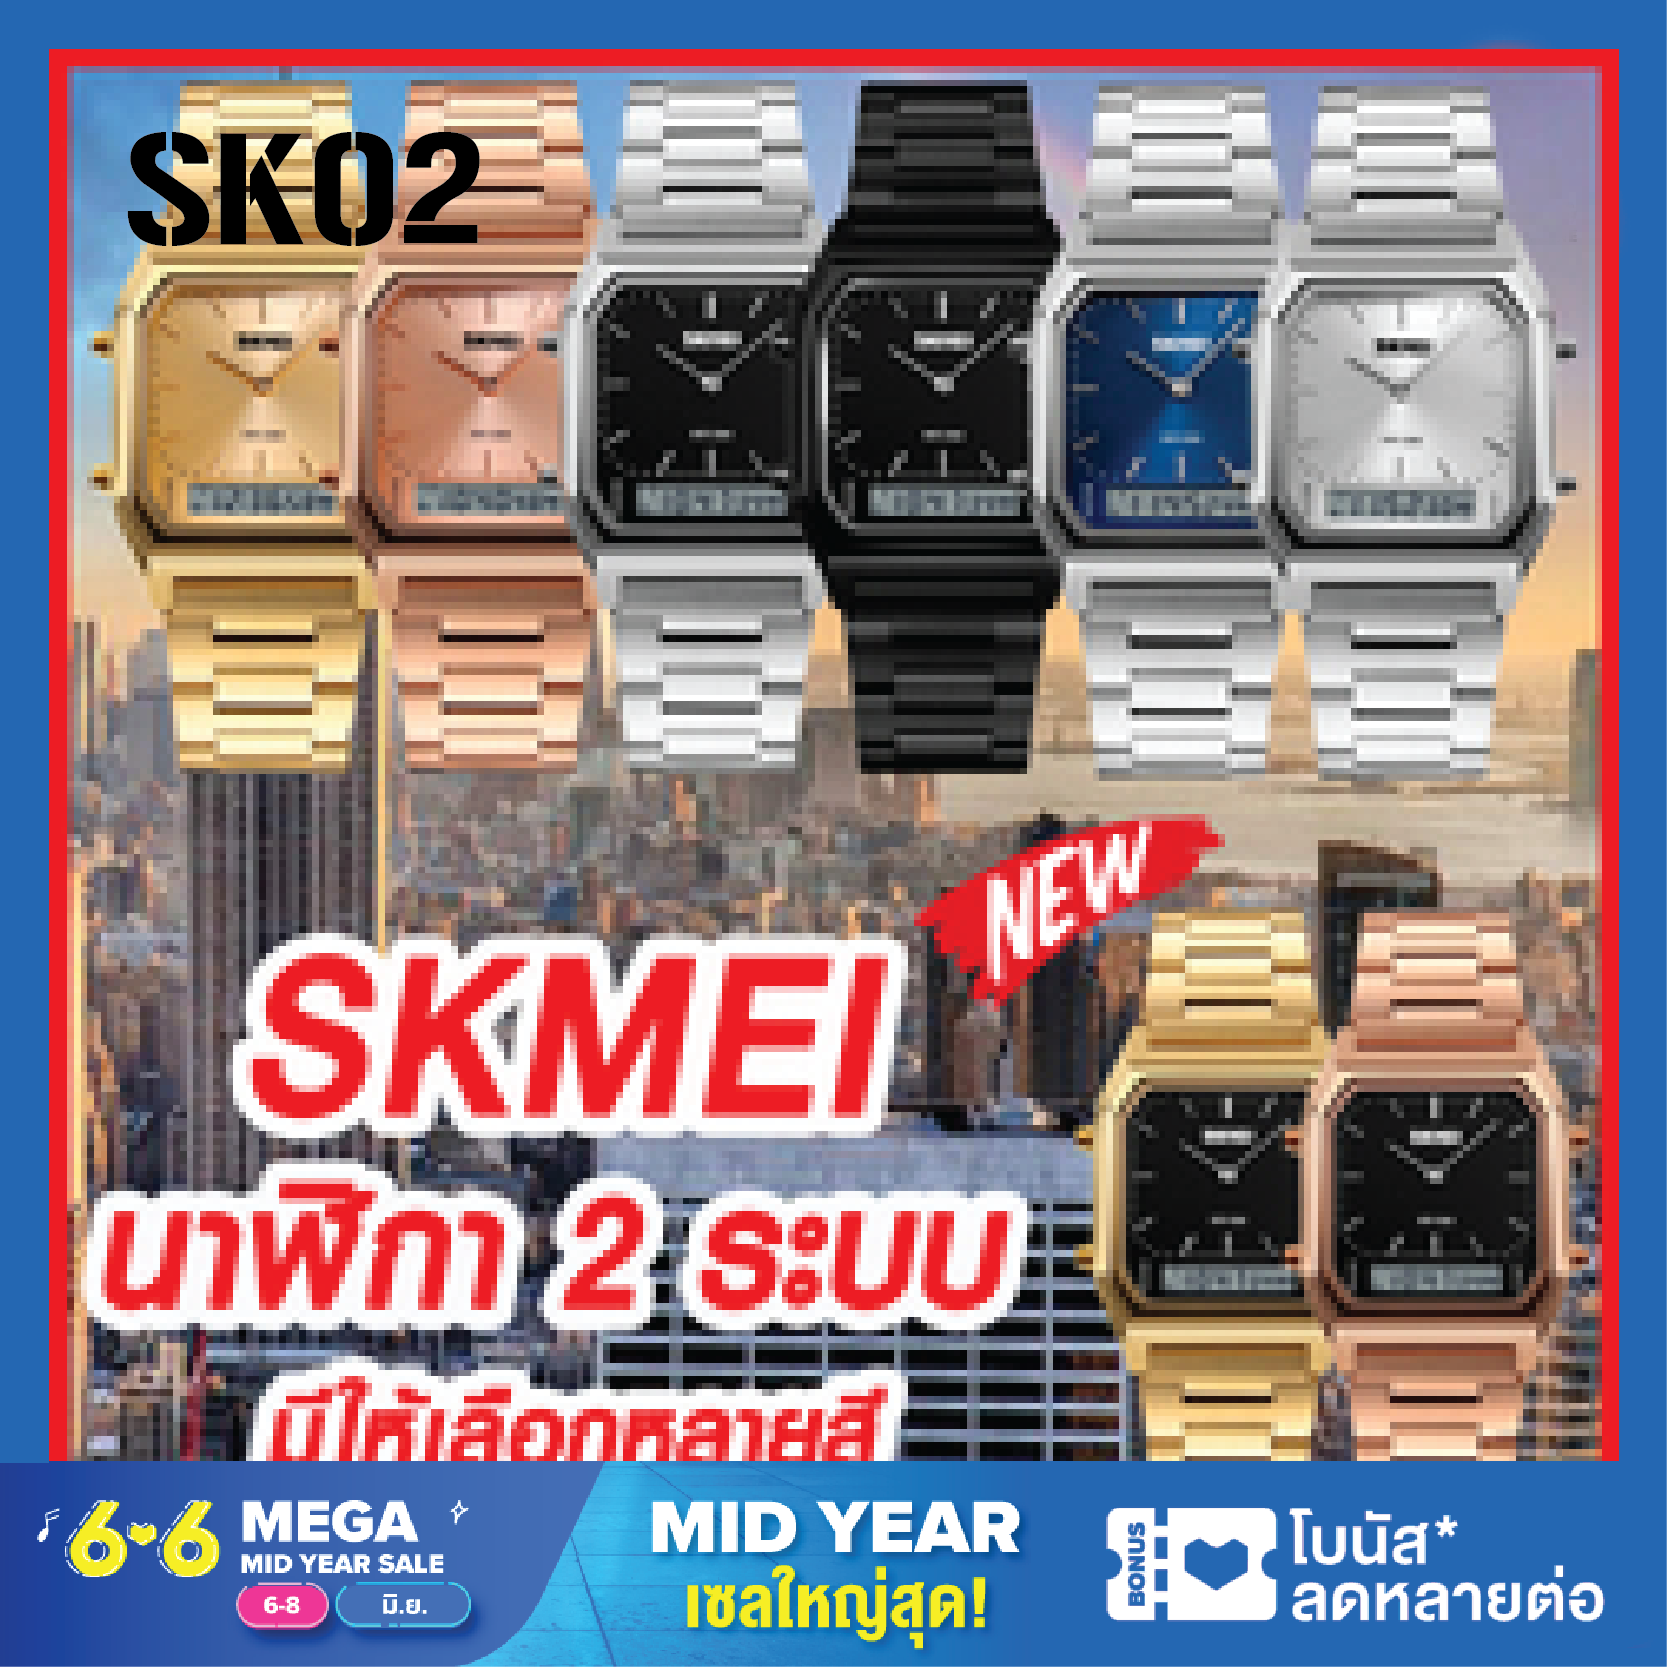 (ส่งจากไทย) ใหม่ 2020 SKMEI 1220 นาฬิกา นาฬิกาข้อมือ นาฬิกาข้อมือผู้หญิง นาฬิกาผู้ชาย รุ่นใหม่ล่าสุด ไฟ LED 2ระบบ สุดฮิต ของแท้ 100% ราคาถูก นาฬิกากันน้ำ ไม่ลอกไม่ดำ ฮิตสุดๆ รุ่น SK02